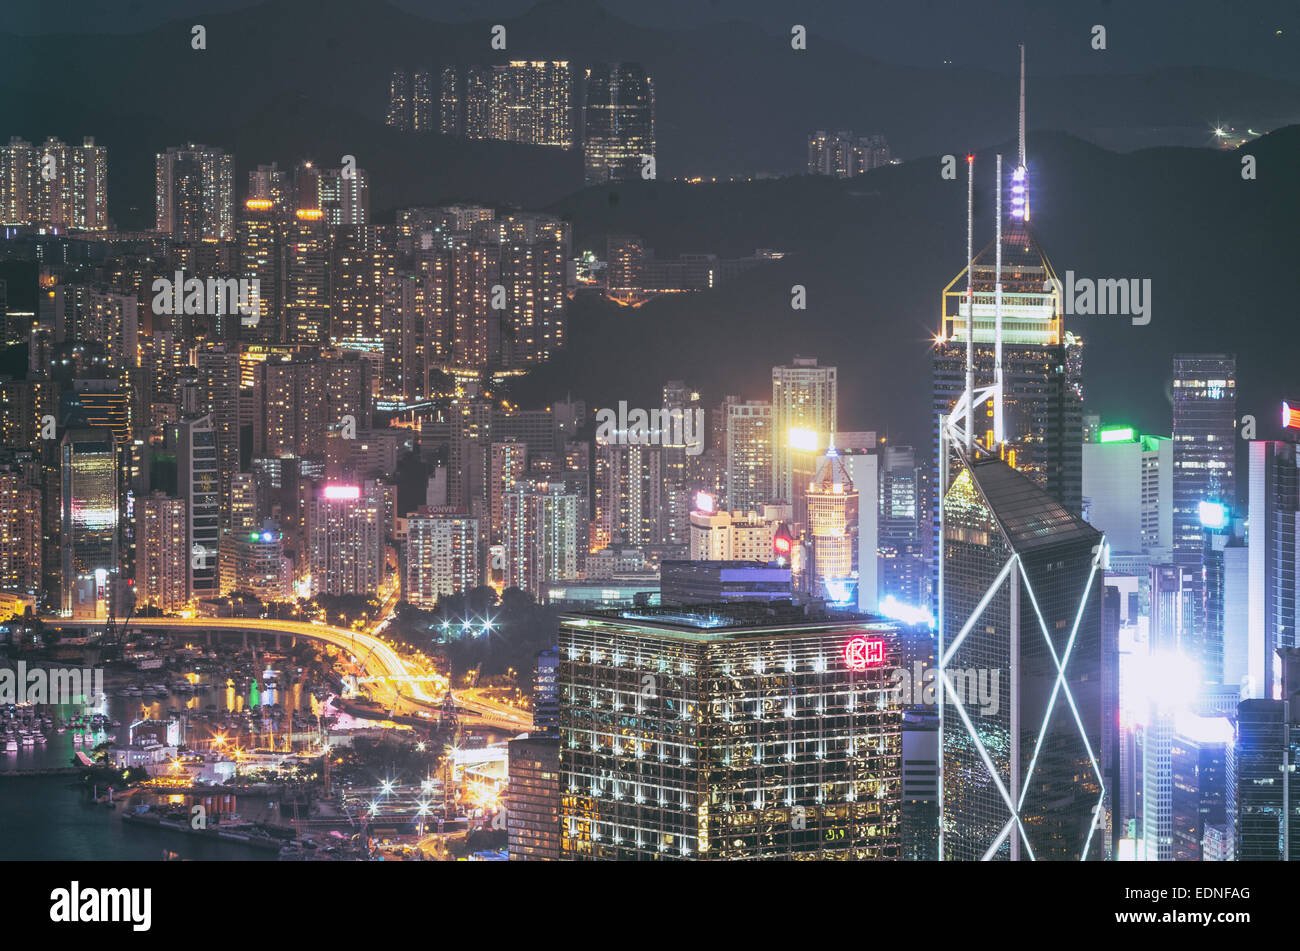 Vue nocturne de Hong Kong, ville avec une forte densité de population. Banque D'Images